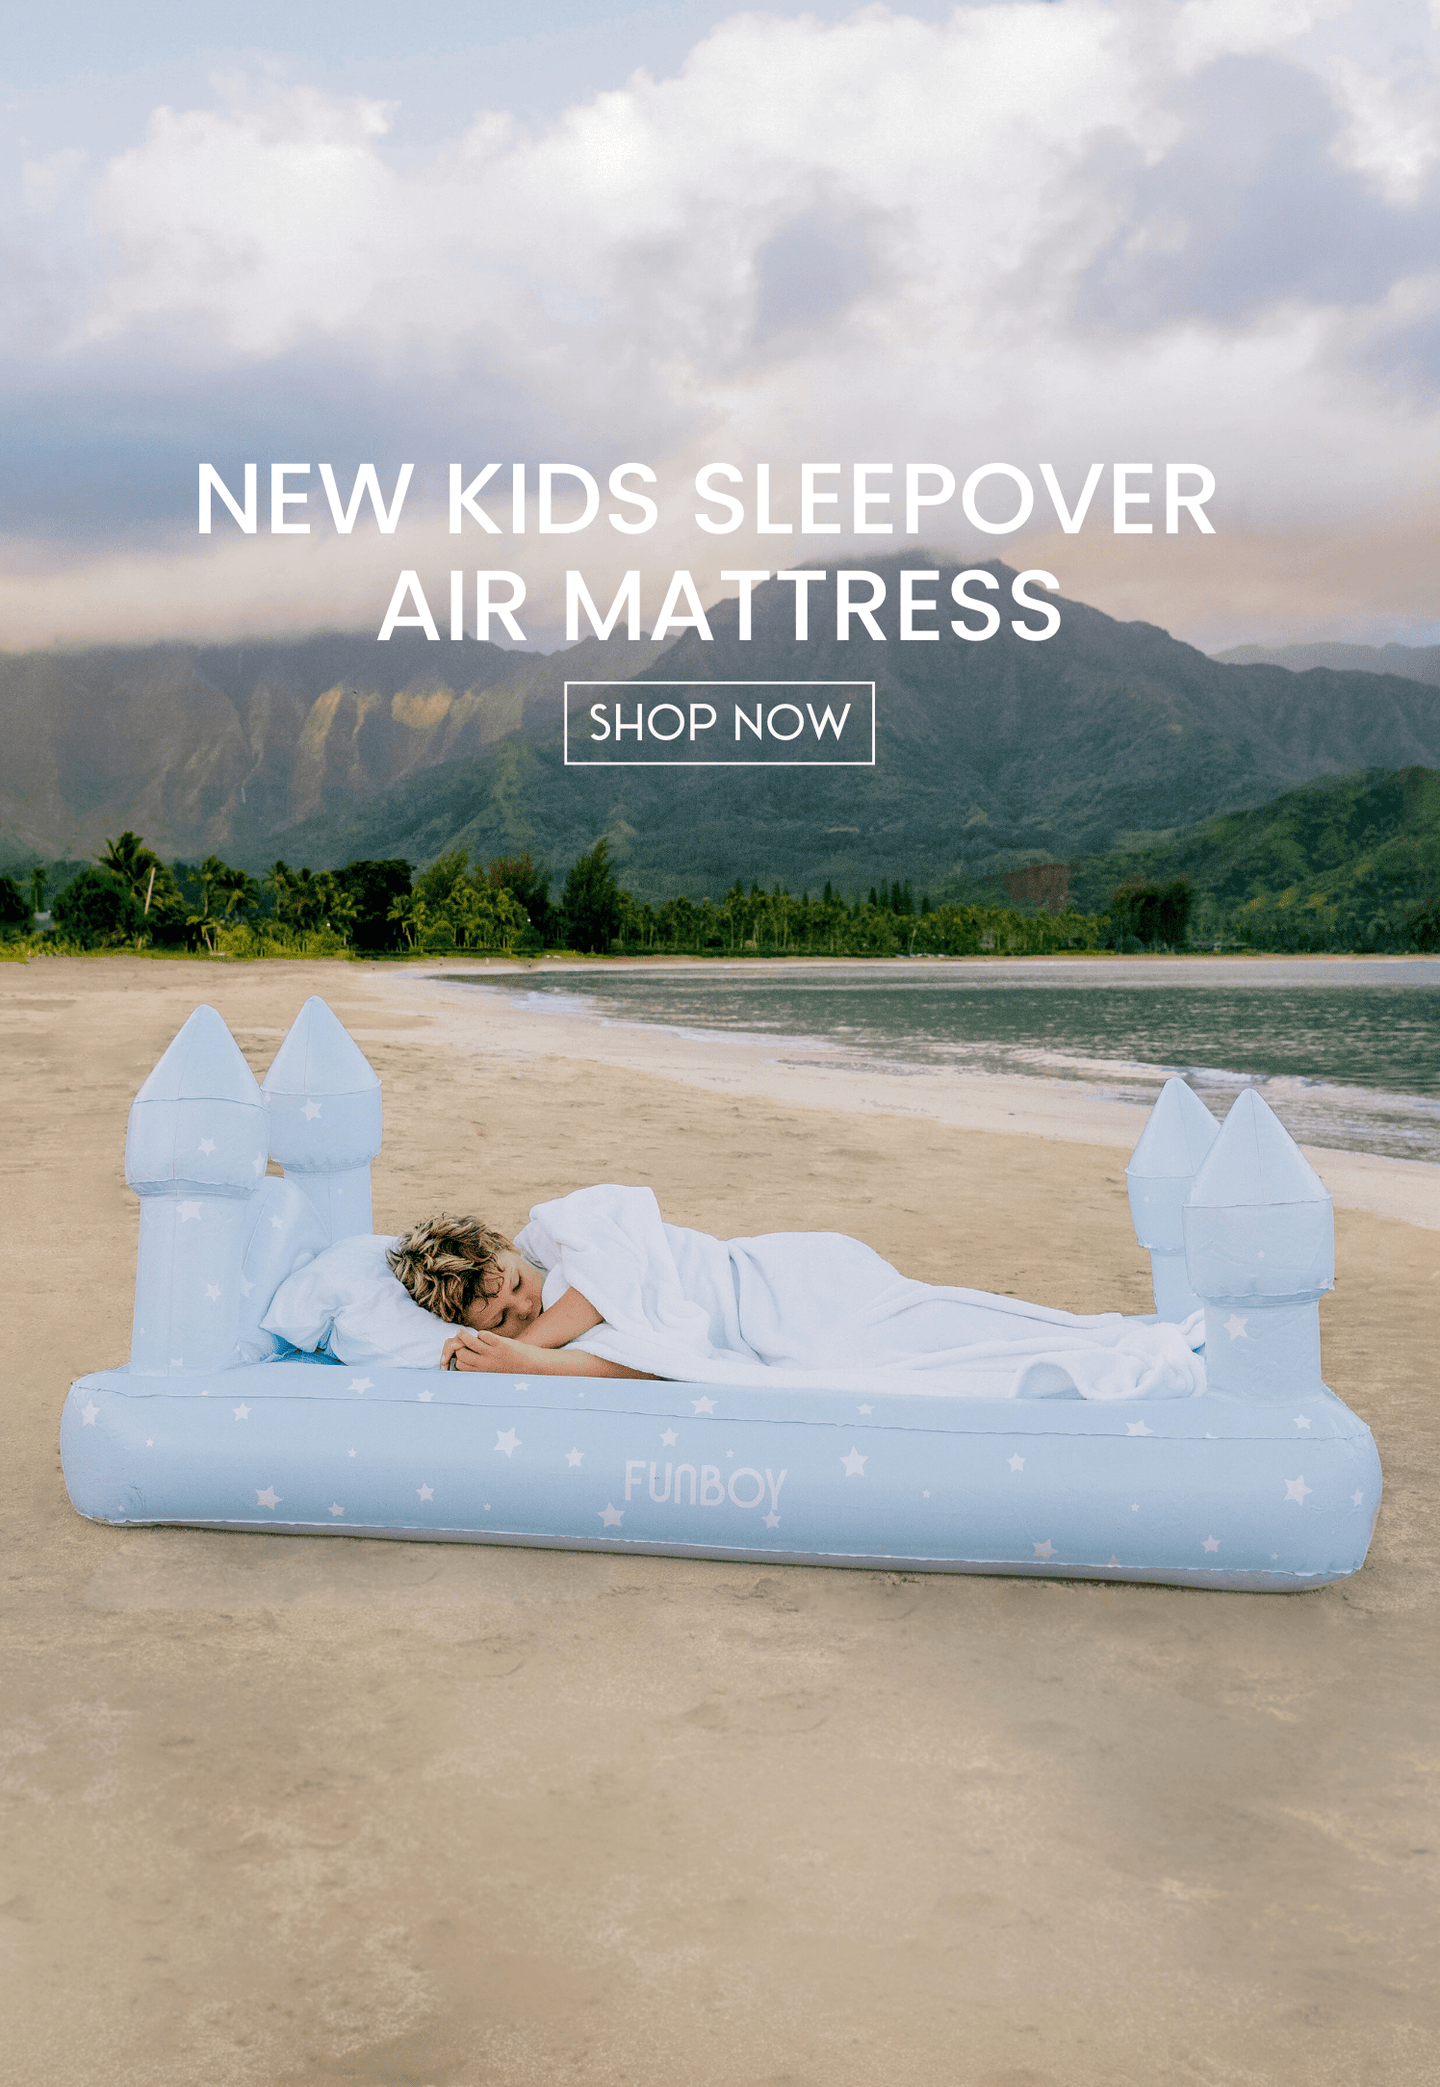 Kids Sleepover Air Mattress. Shop Now.